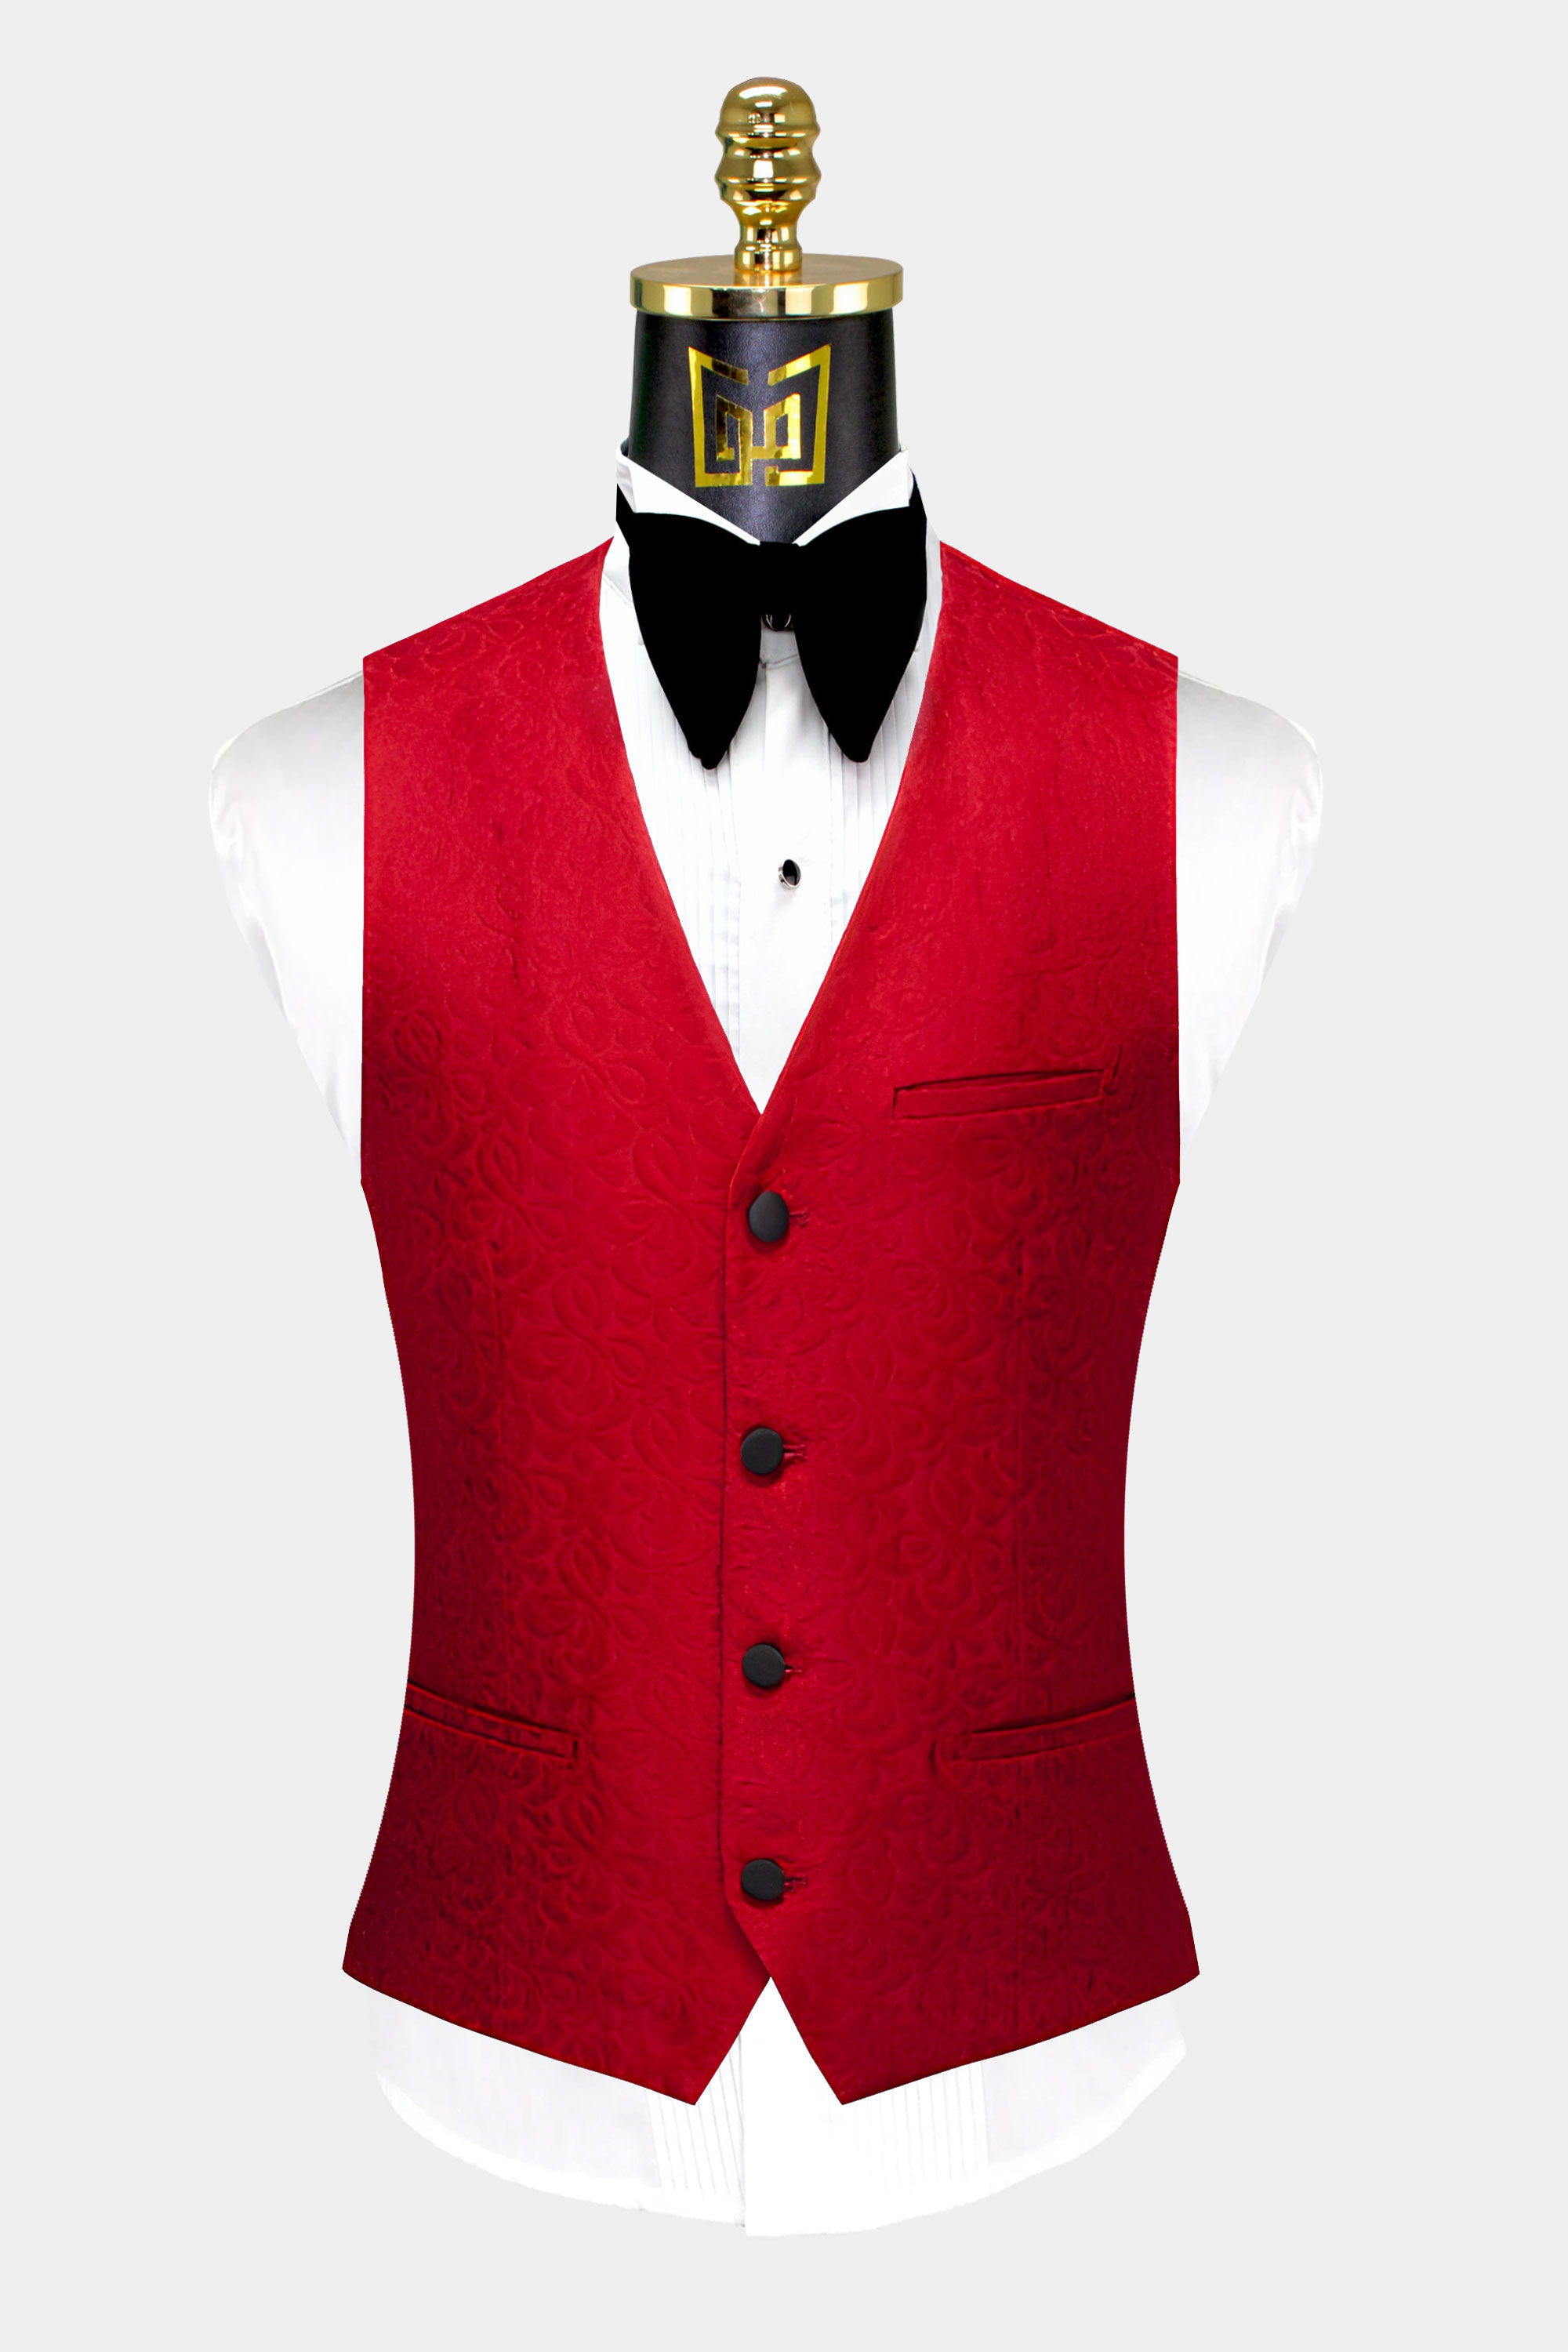 Floral-Apple-Red-Tuxedo-Vest-from-Gentlemansguru.com